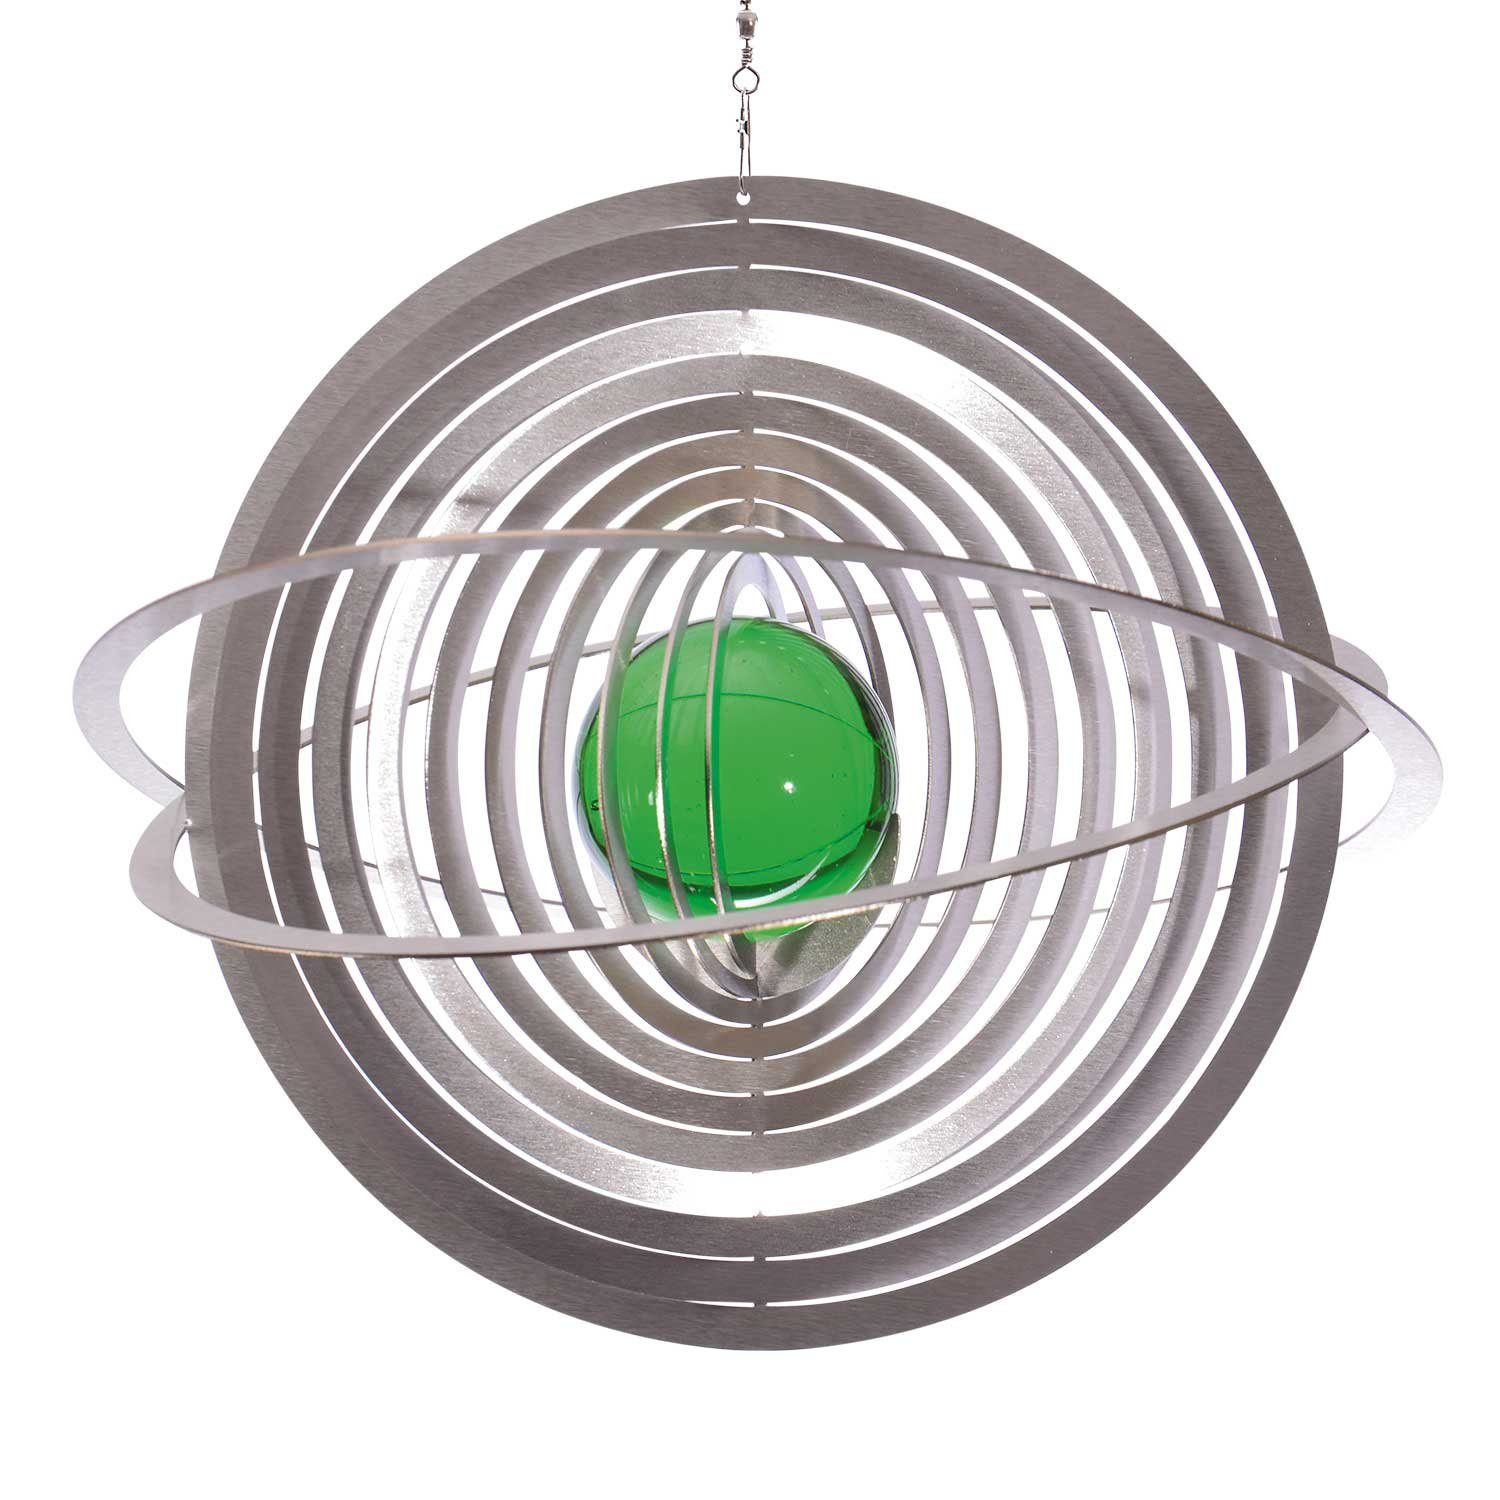 ILLUMINO Windspiel Edelstahl Windspiel Saturn mit smaragdgrüner 35mm Glaskugel Metall Windspiel für Garten und Wohnung Gartendeko Wohn und Fenster Deko